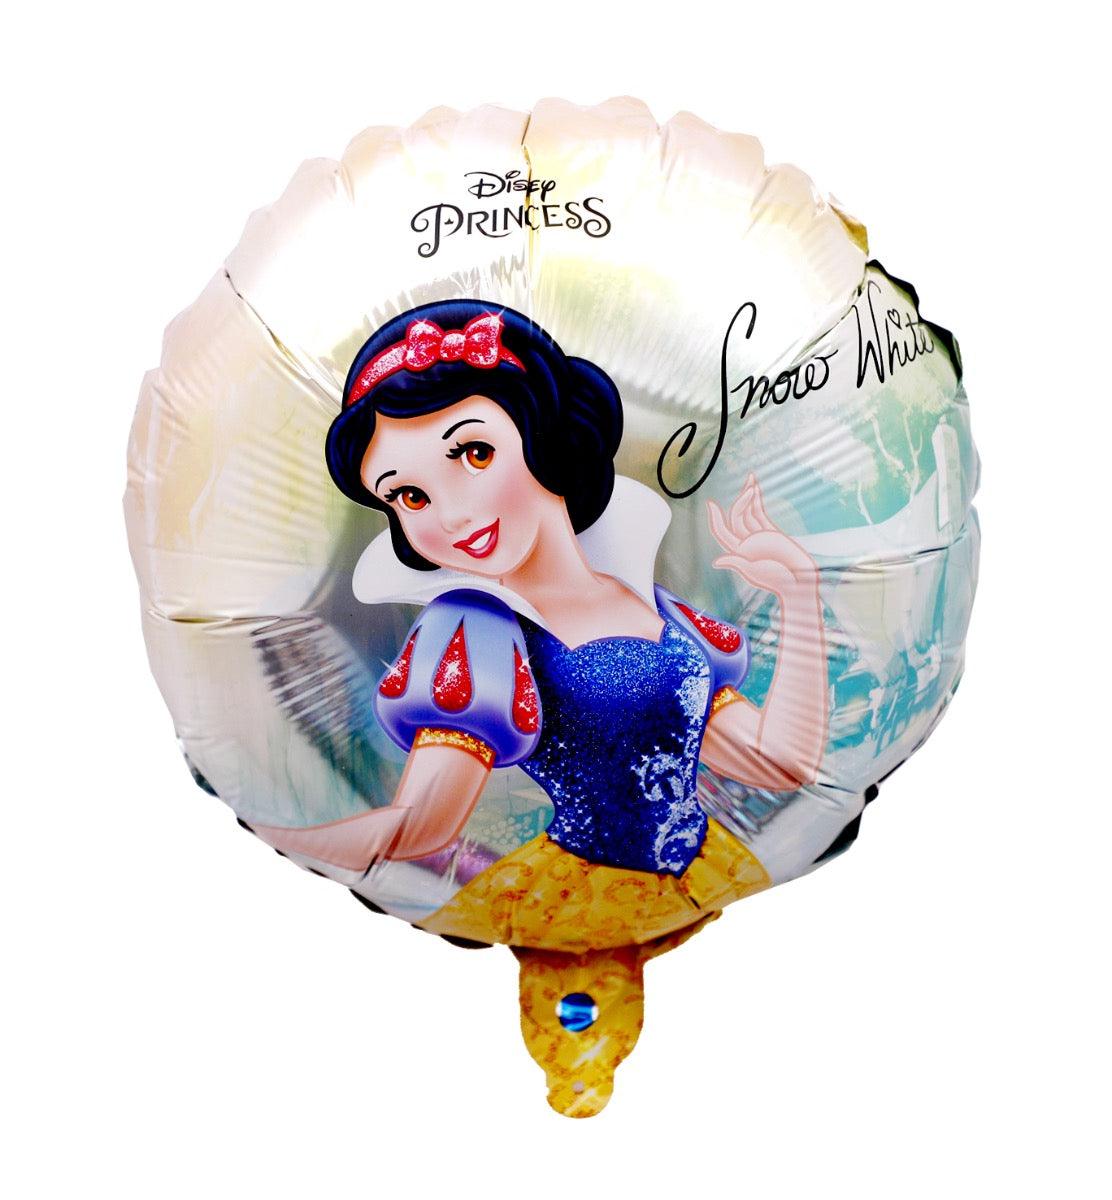 Disney Princess Snow White Round Foil Balloon, Pack of 1